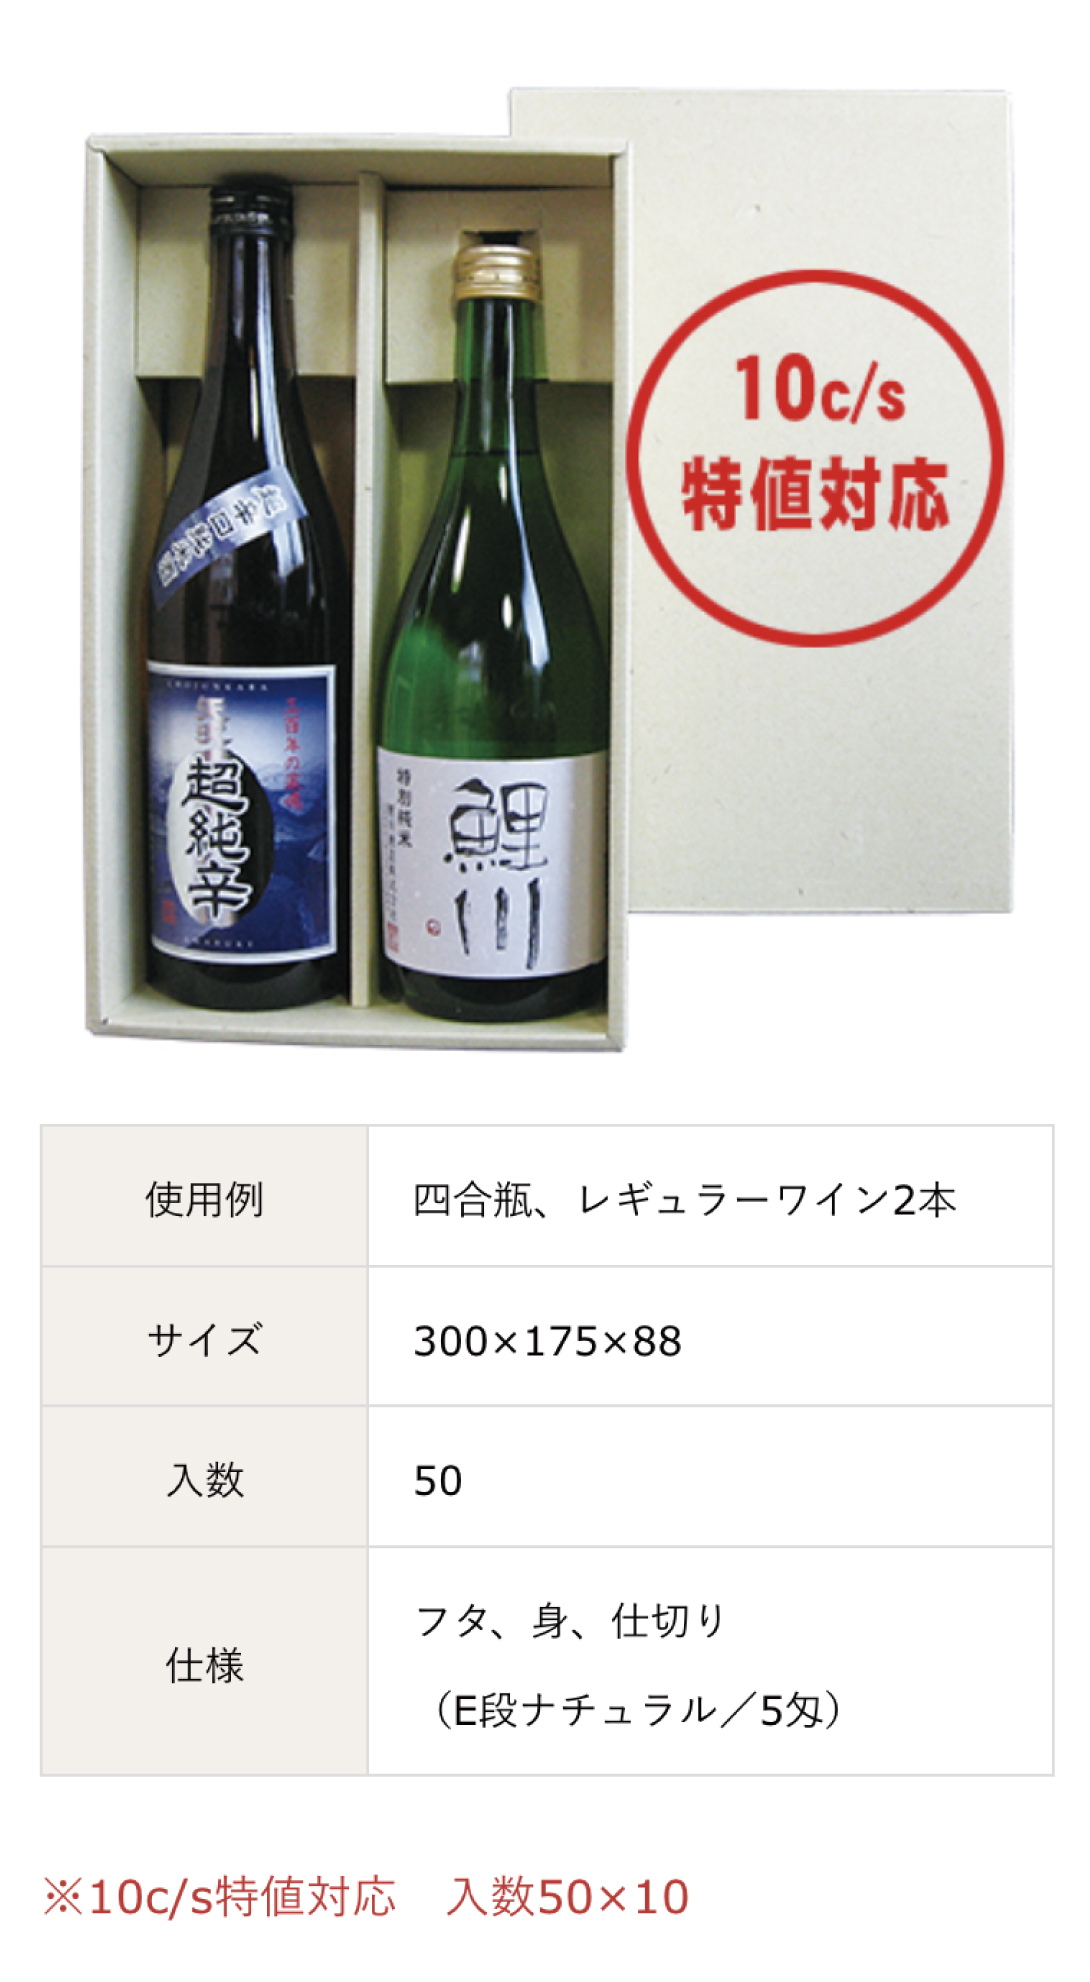 レギュラーワイン用、日本酒・ワイン・ウィスキー・ビール・シャンパンなどの箱は岩田紙器